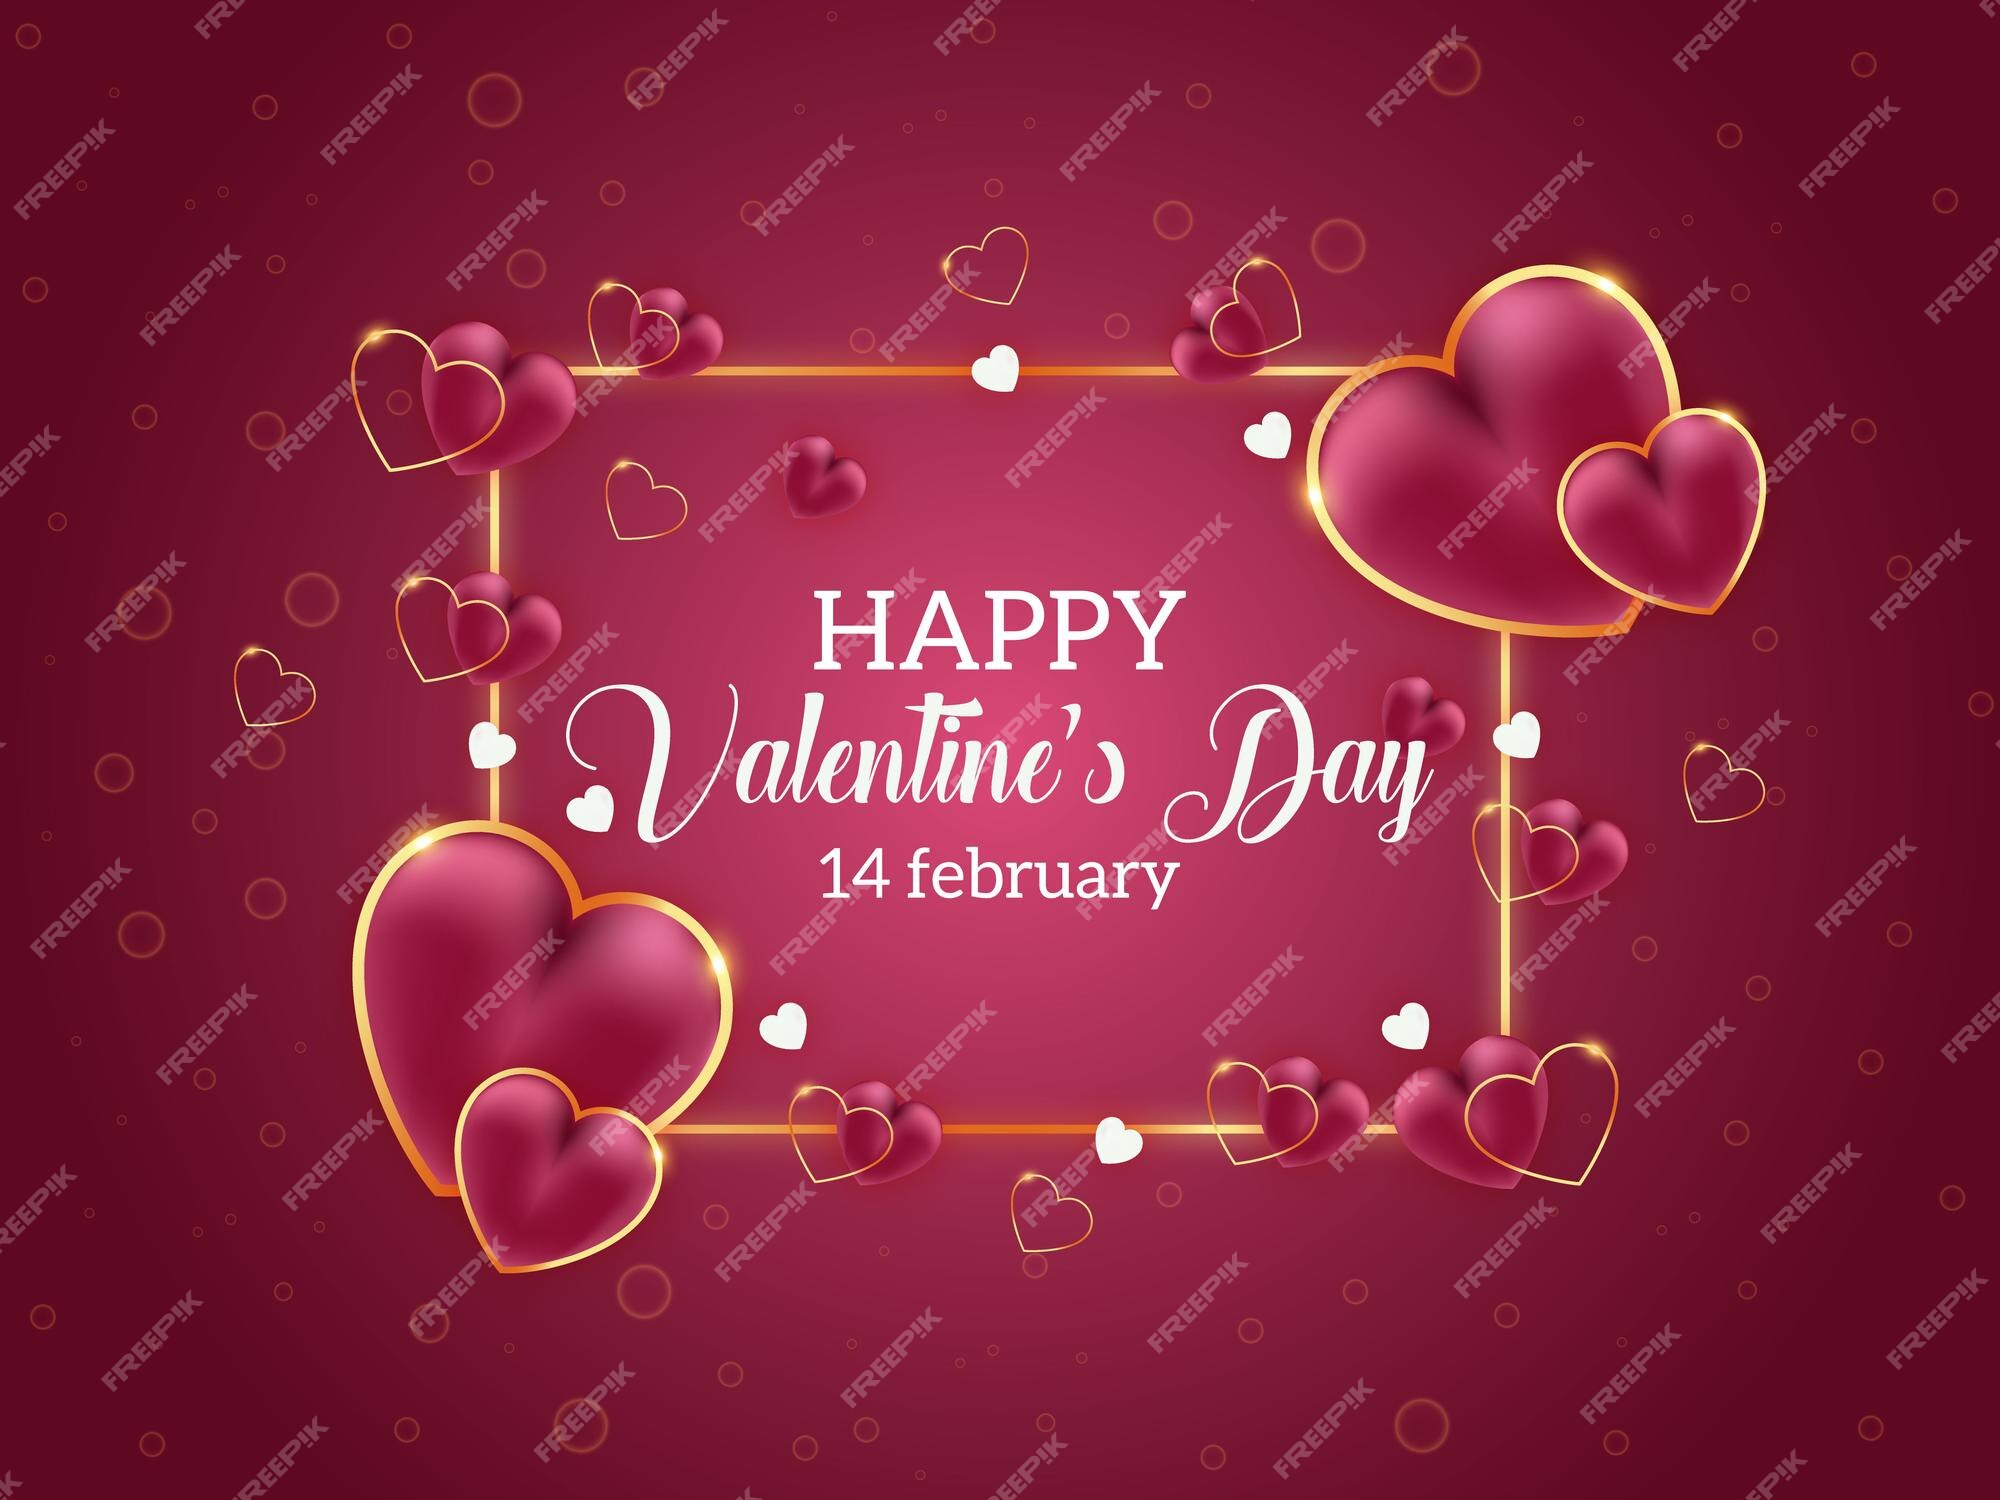 Premium Vector | Modern valentine's day background design with love hearts.